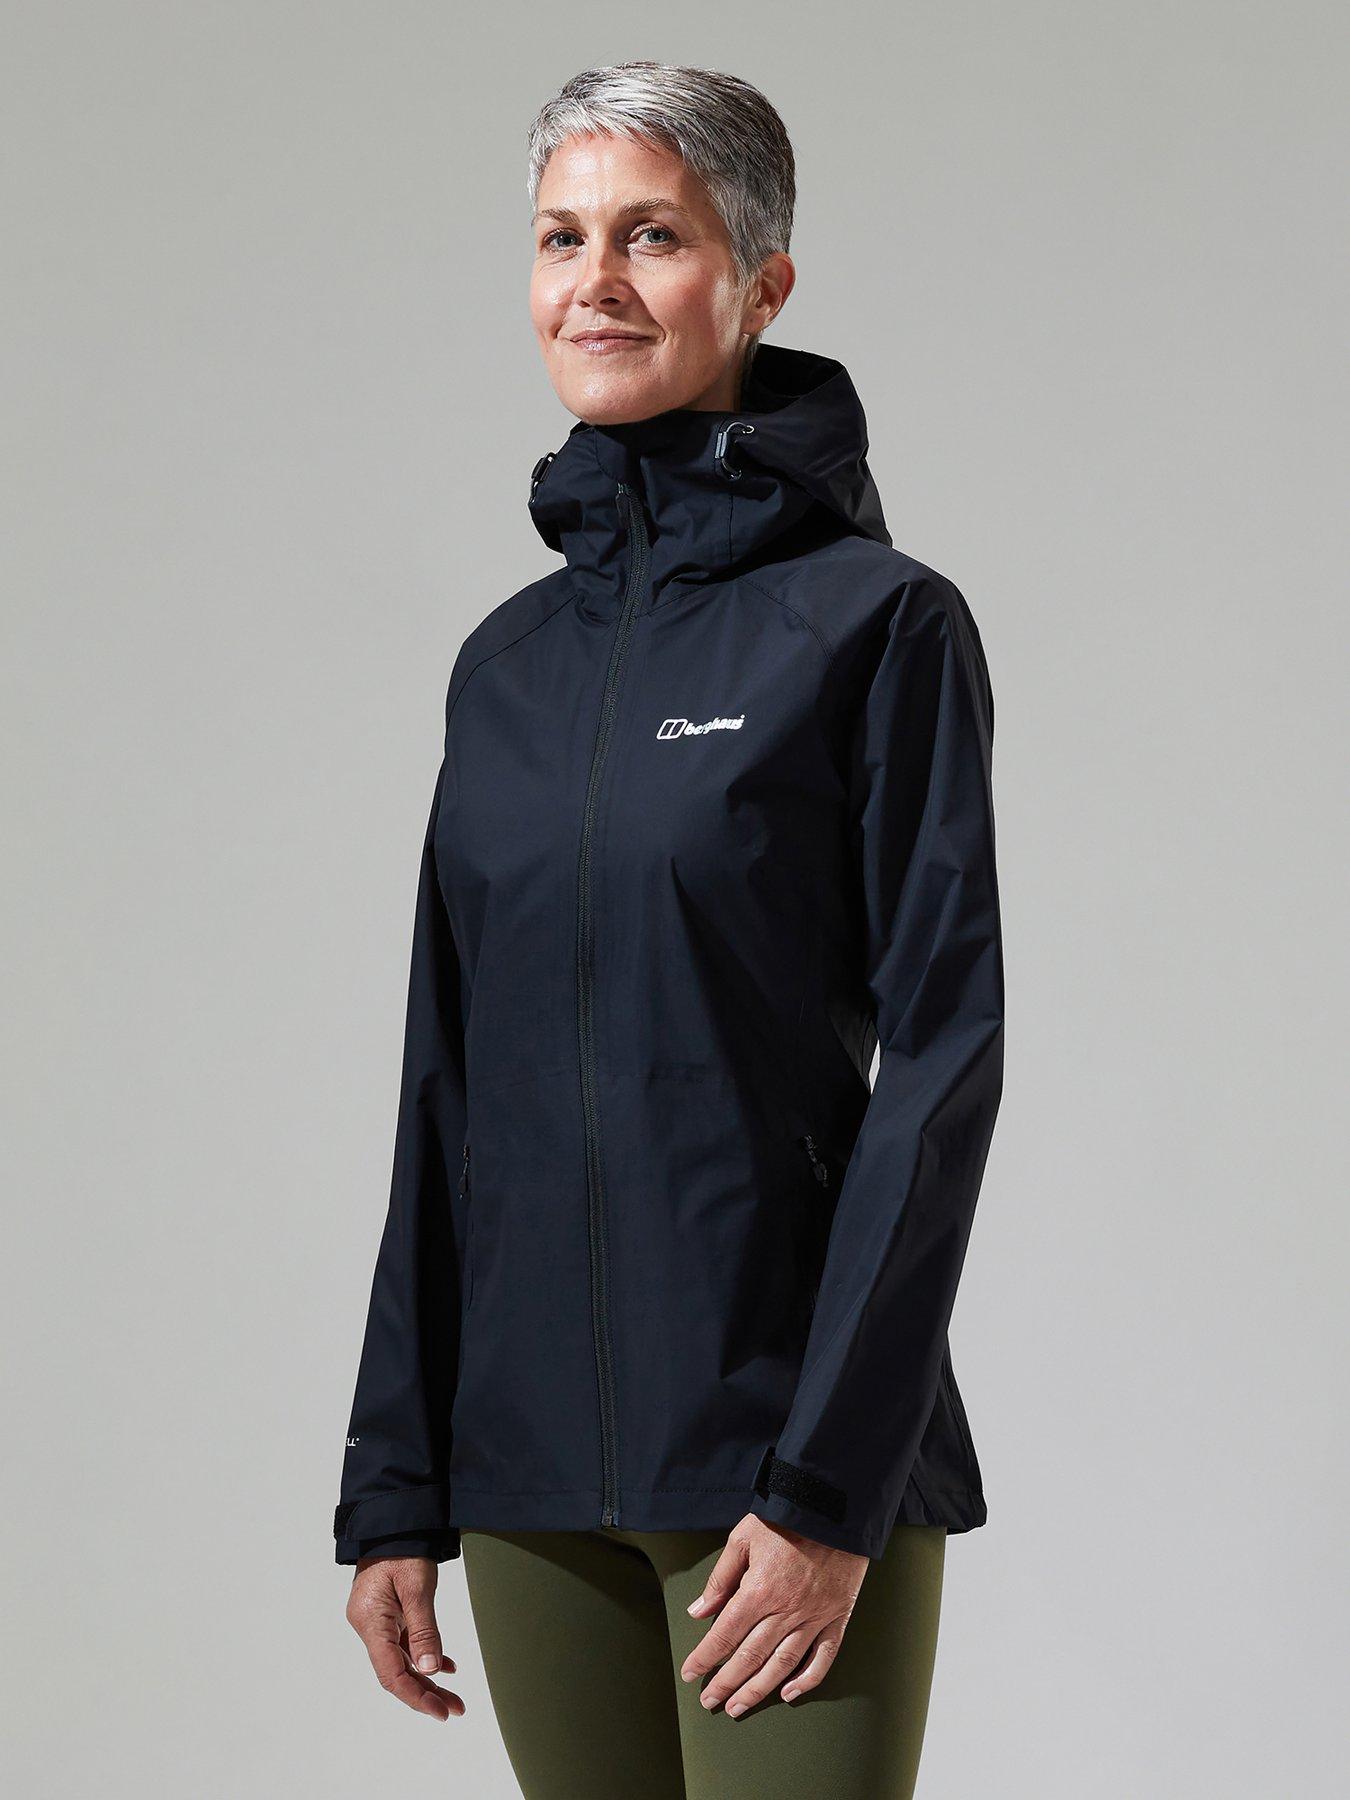 Women's Waterproof Jackets, Lightweight Shells